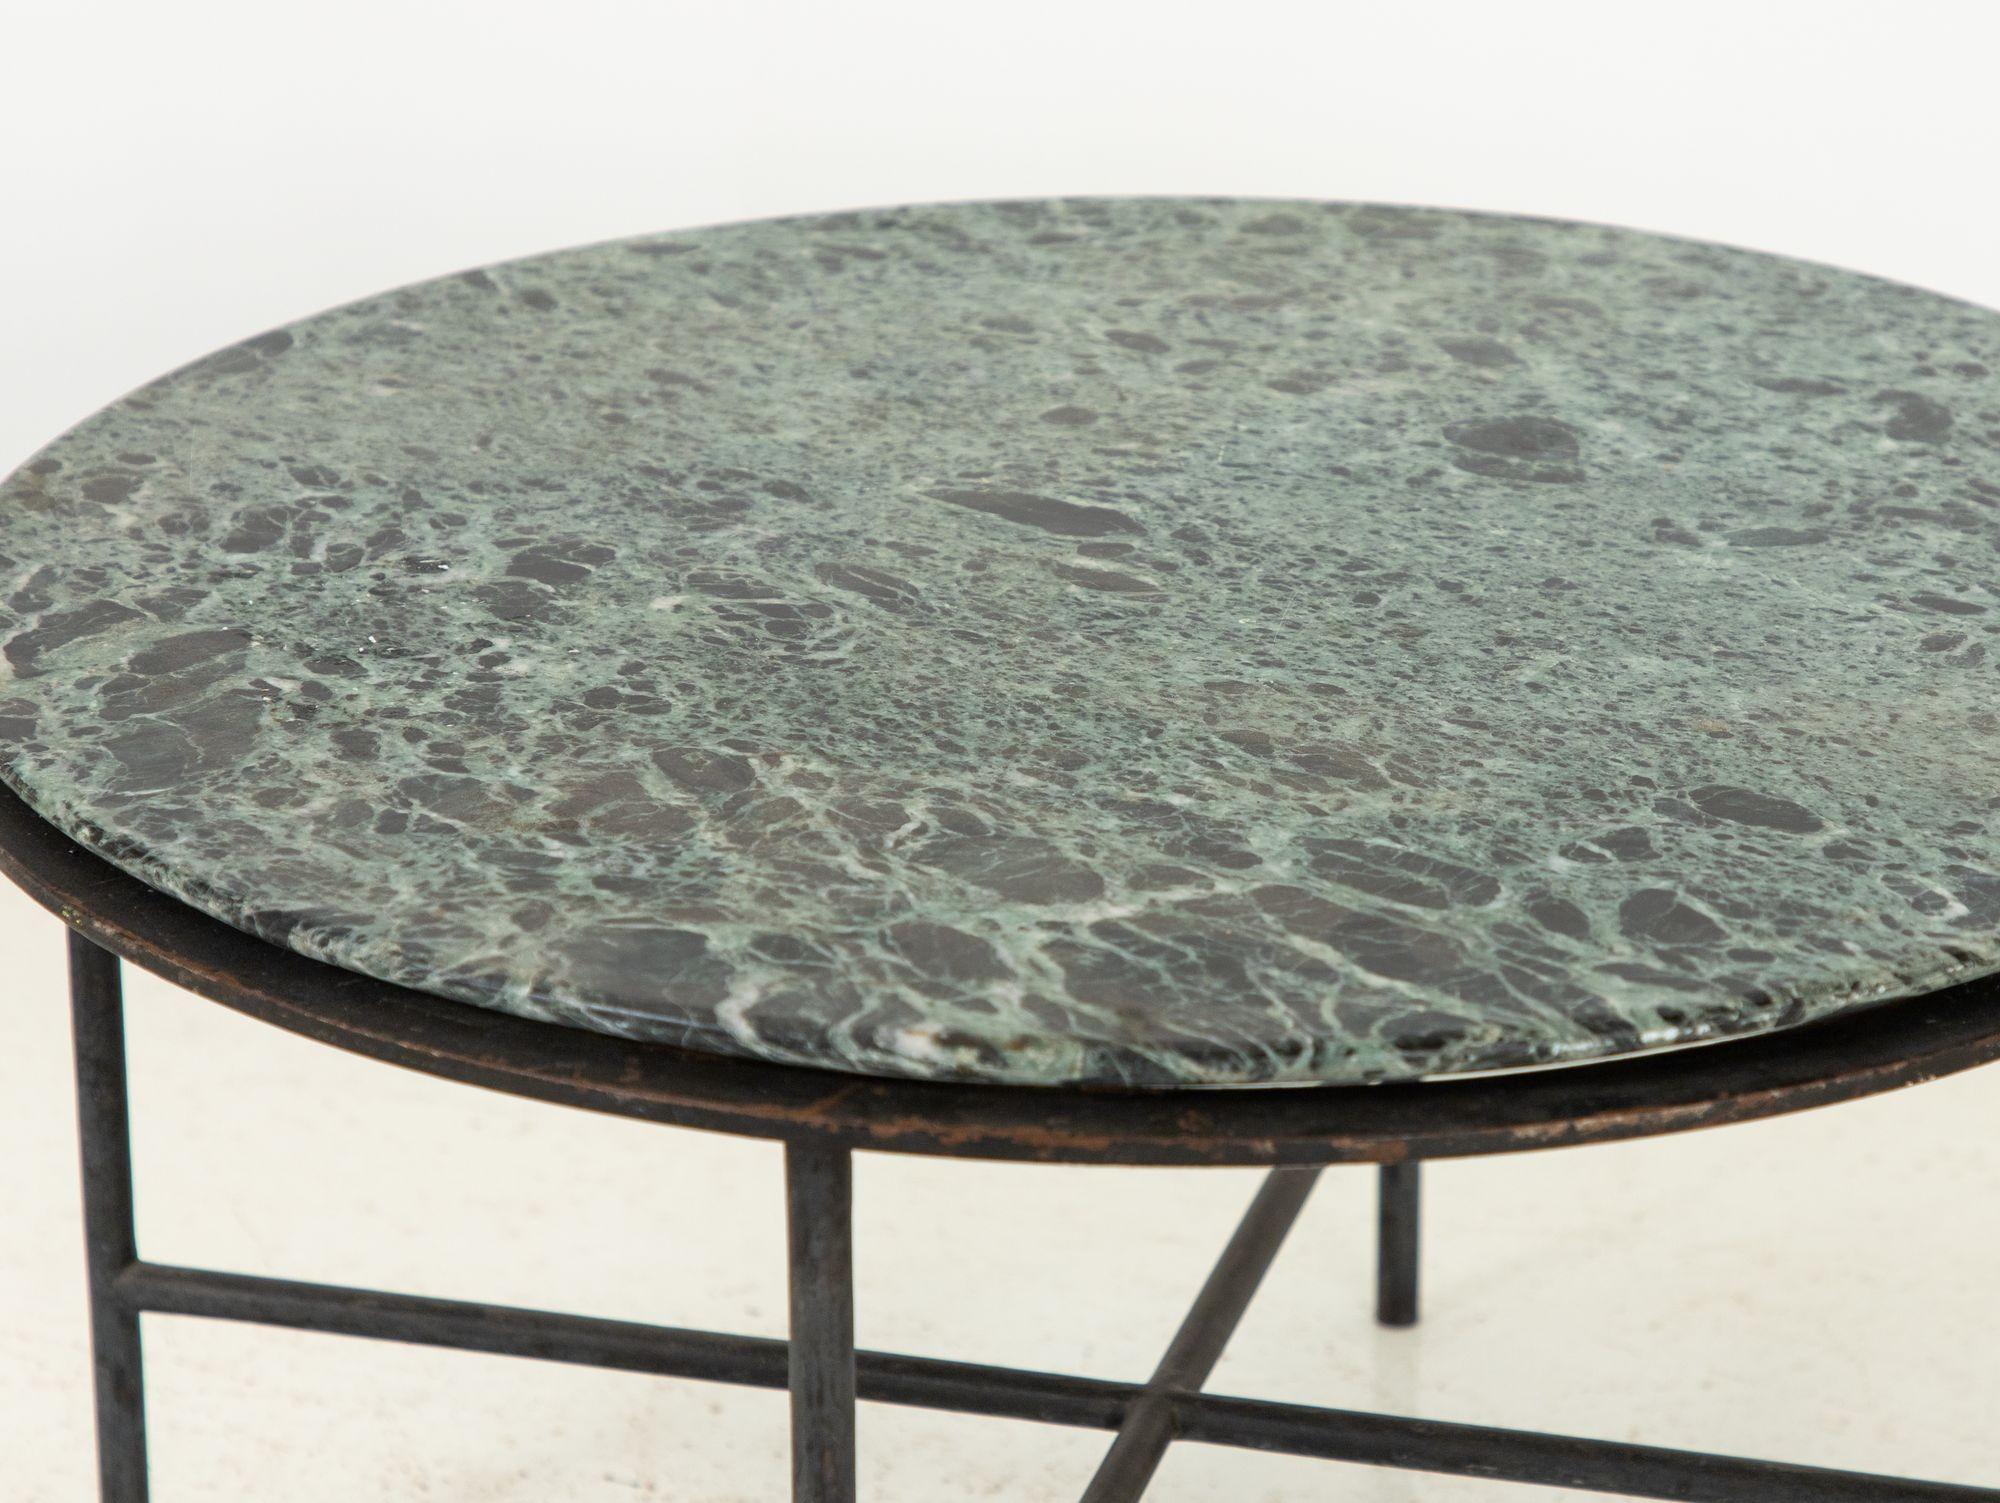 De la tapisserie vibrante du design des années 1960, en France, émerge une captivante table à cocktail ronde à base de fer, couronnée d'un resplendissant plateau de marbre vert. La juxtaposition du fer industriel robuste avec l'allure riche et